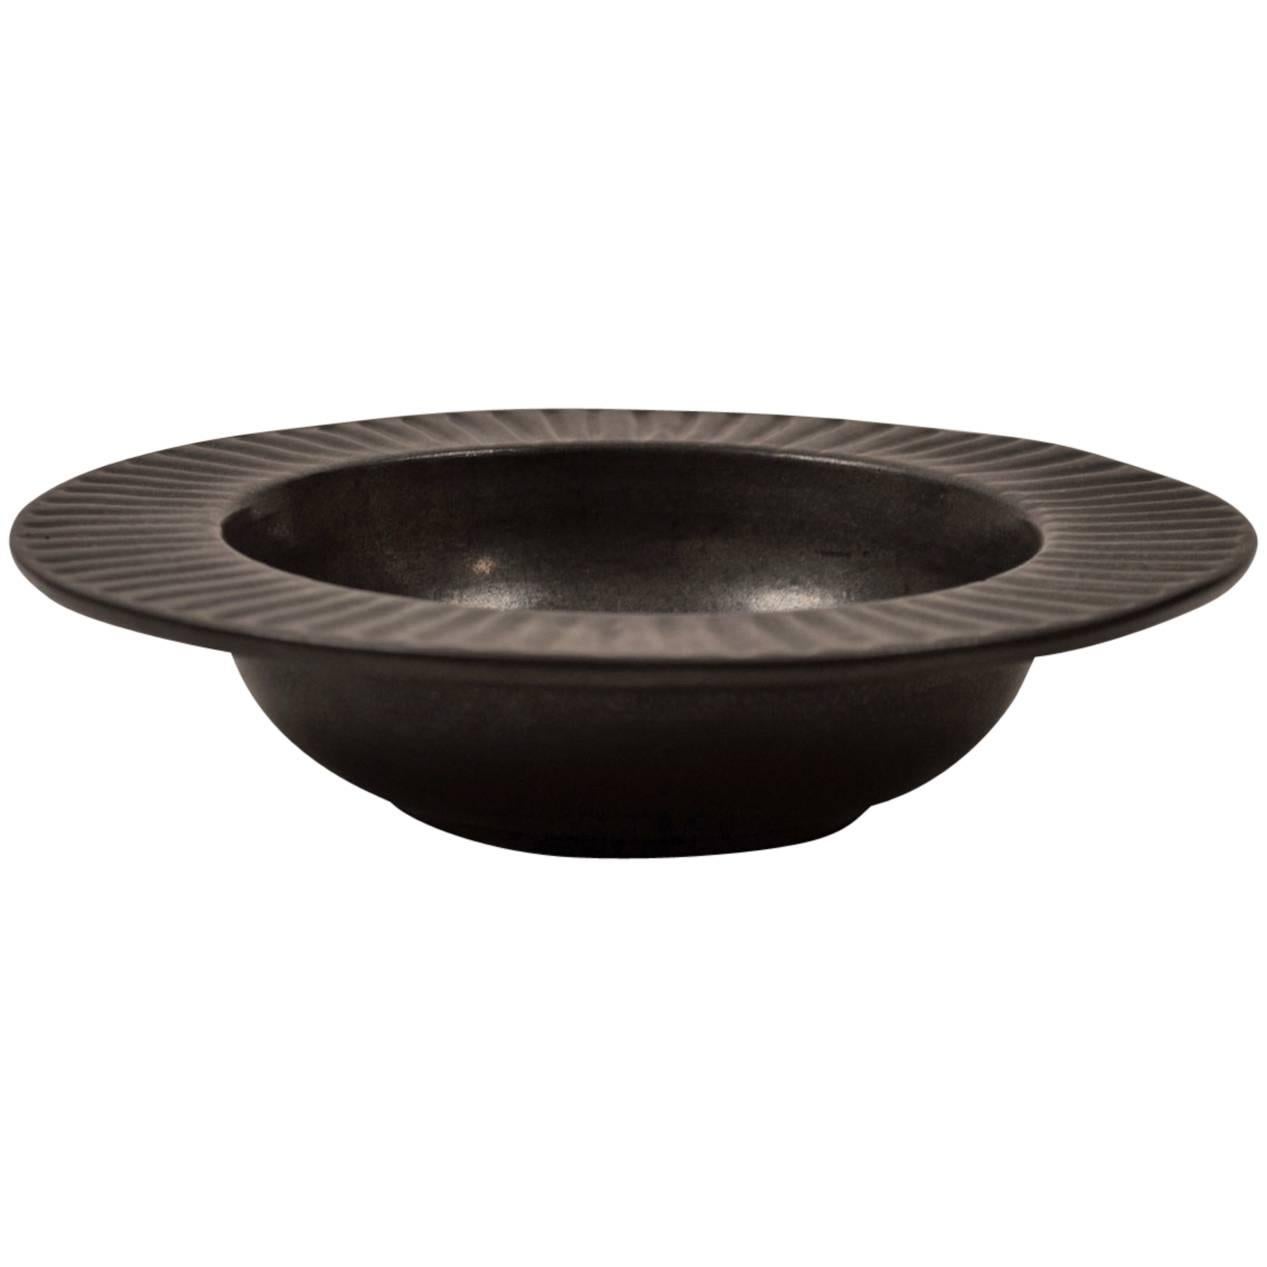 Matt Black Pottery Bowl by Spencer